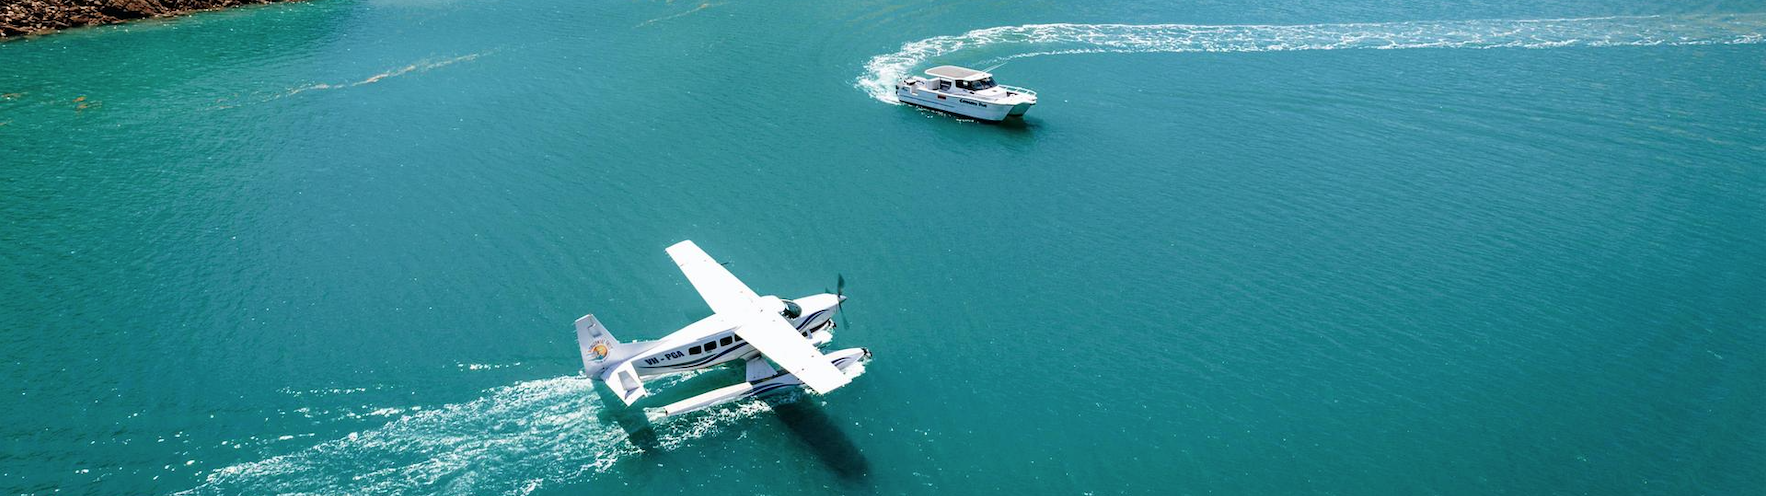 דרבי אוסטרליה מטוס סילוף וסירה במים